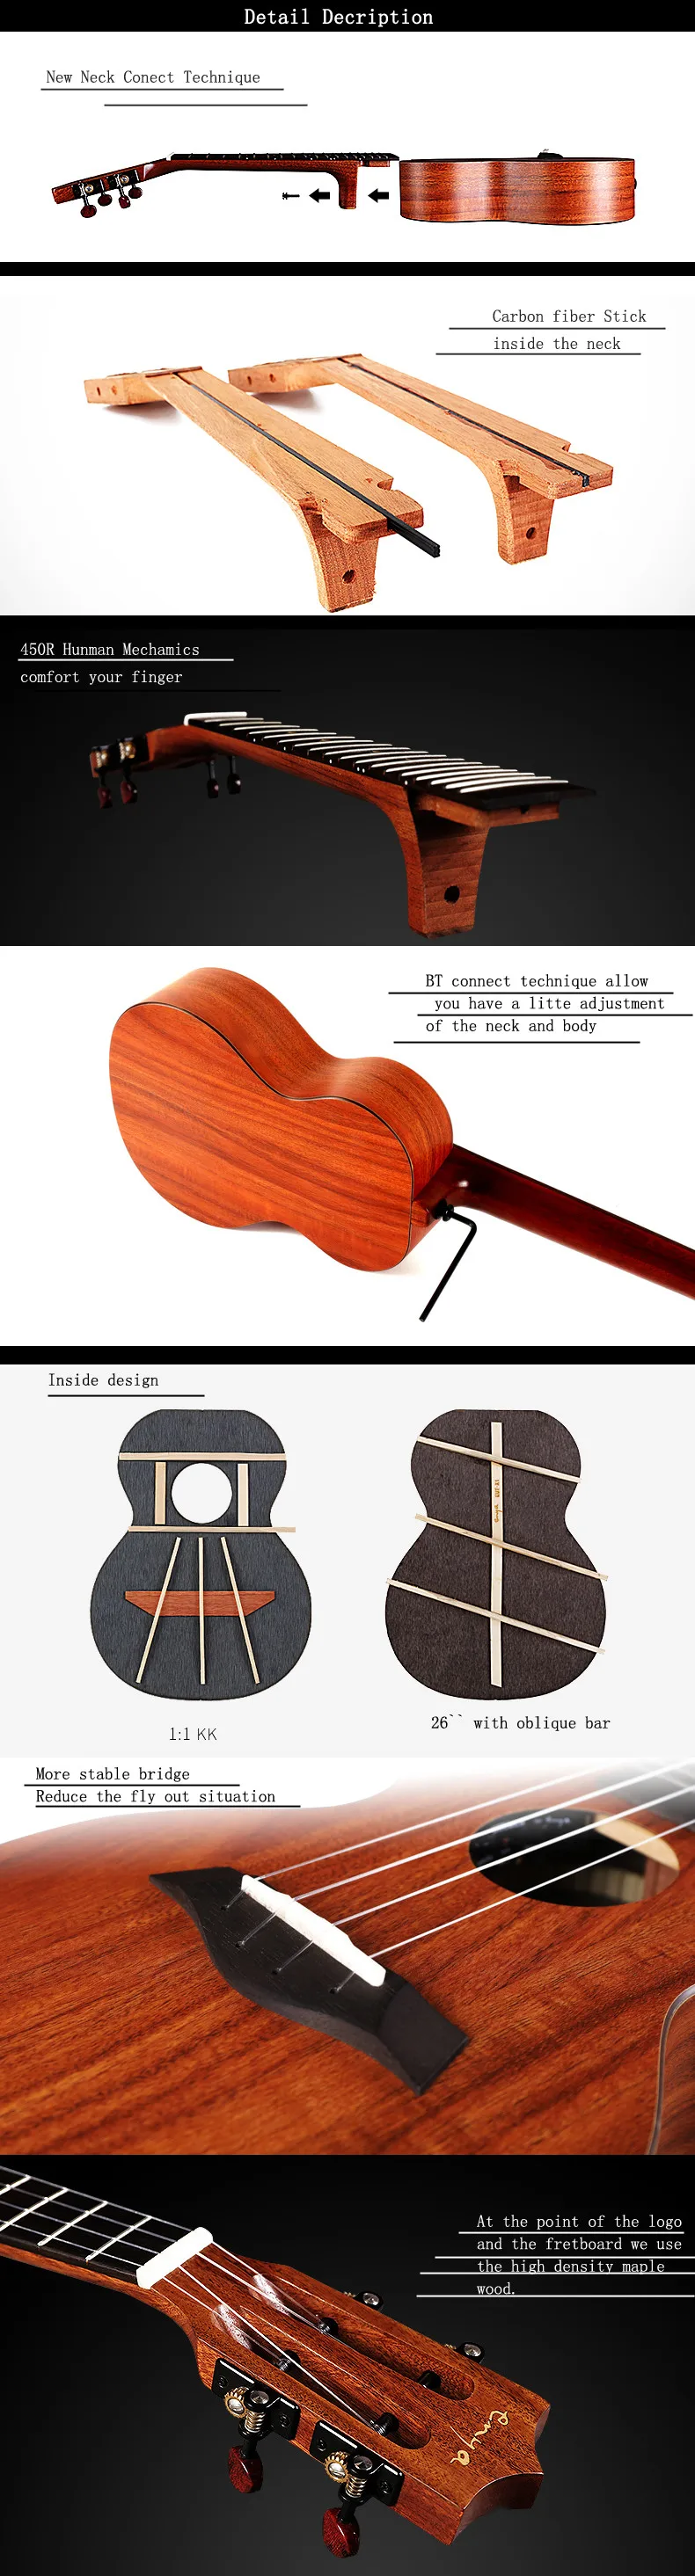 Enya X1 23 26 дюймов укулеле Гавайская гитара концерт тенор КоА с классической головой сумка Экспресс доставка бесплатная доставка